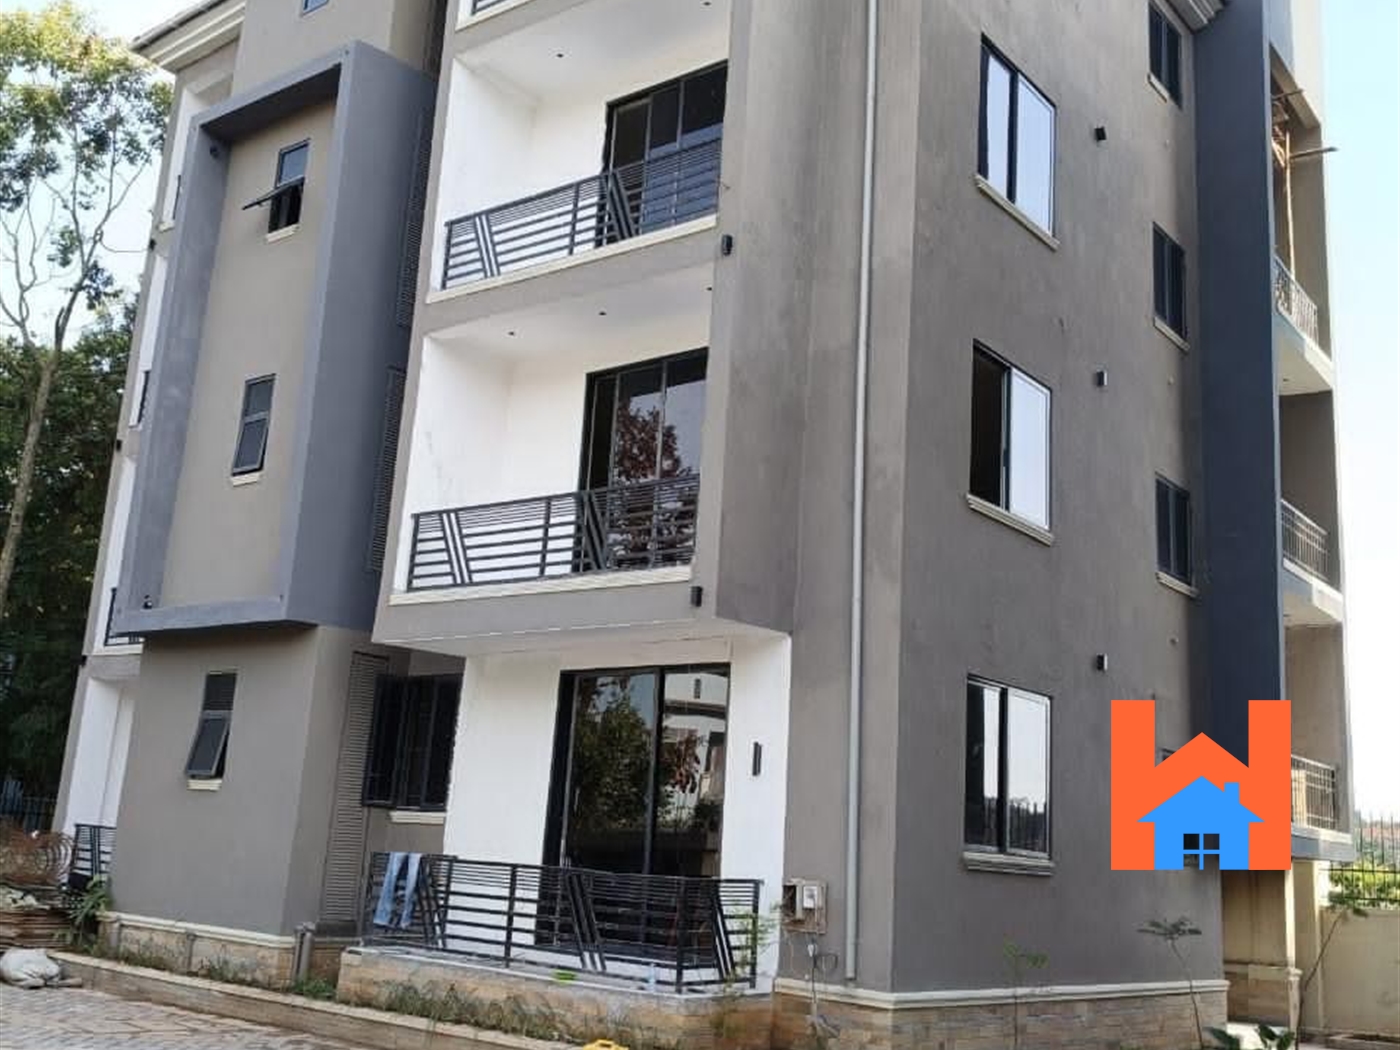 Apartment block for sale in Muyenya Kampala